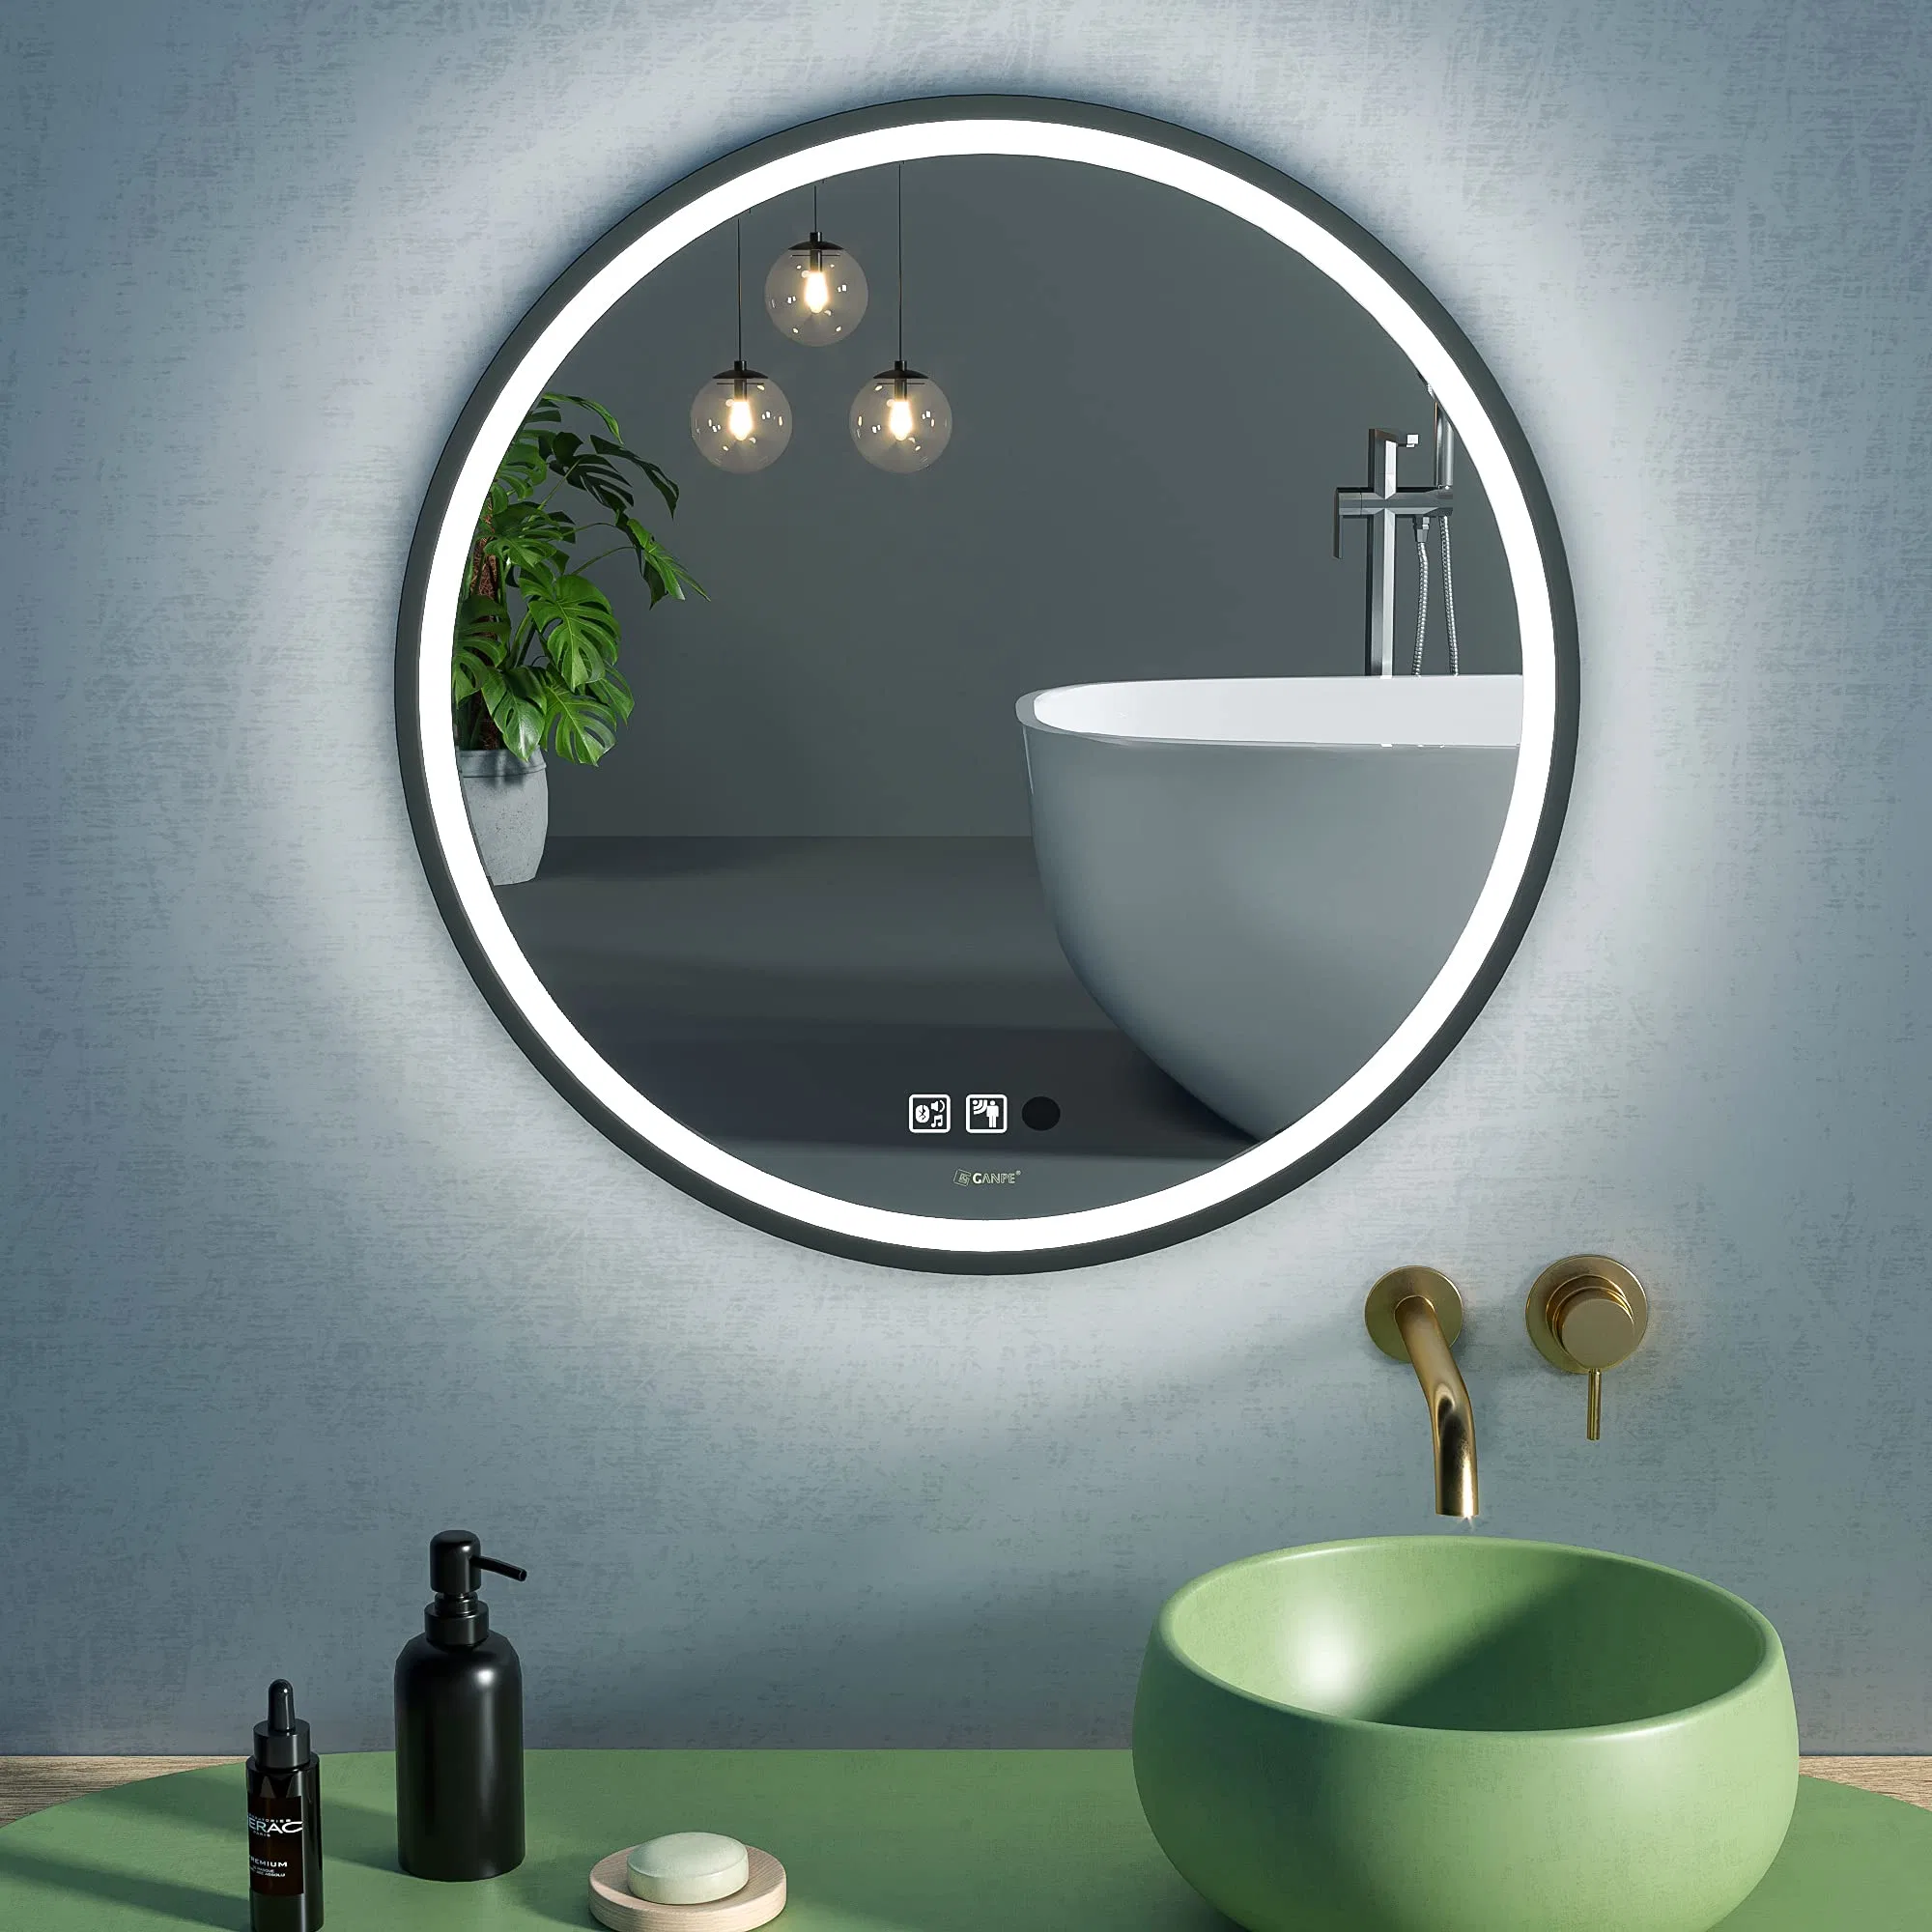 Miroir de maquillage intelligent éclairé pour la maison de forme ronde moderne avec lumières, miroir de salle de bains LED encadré suspendu au mur.